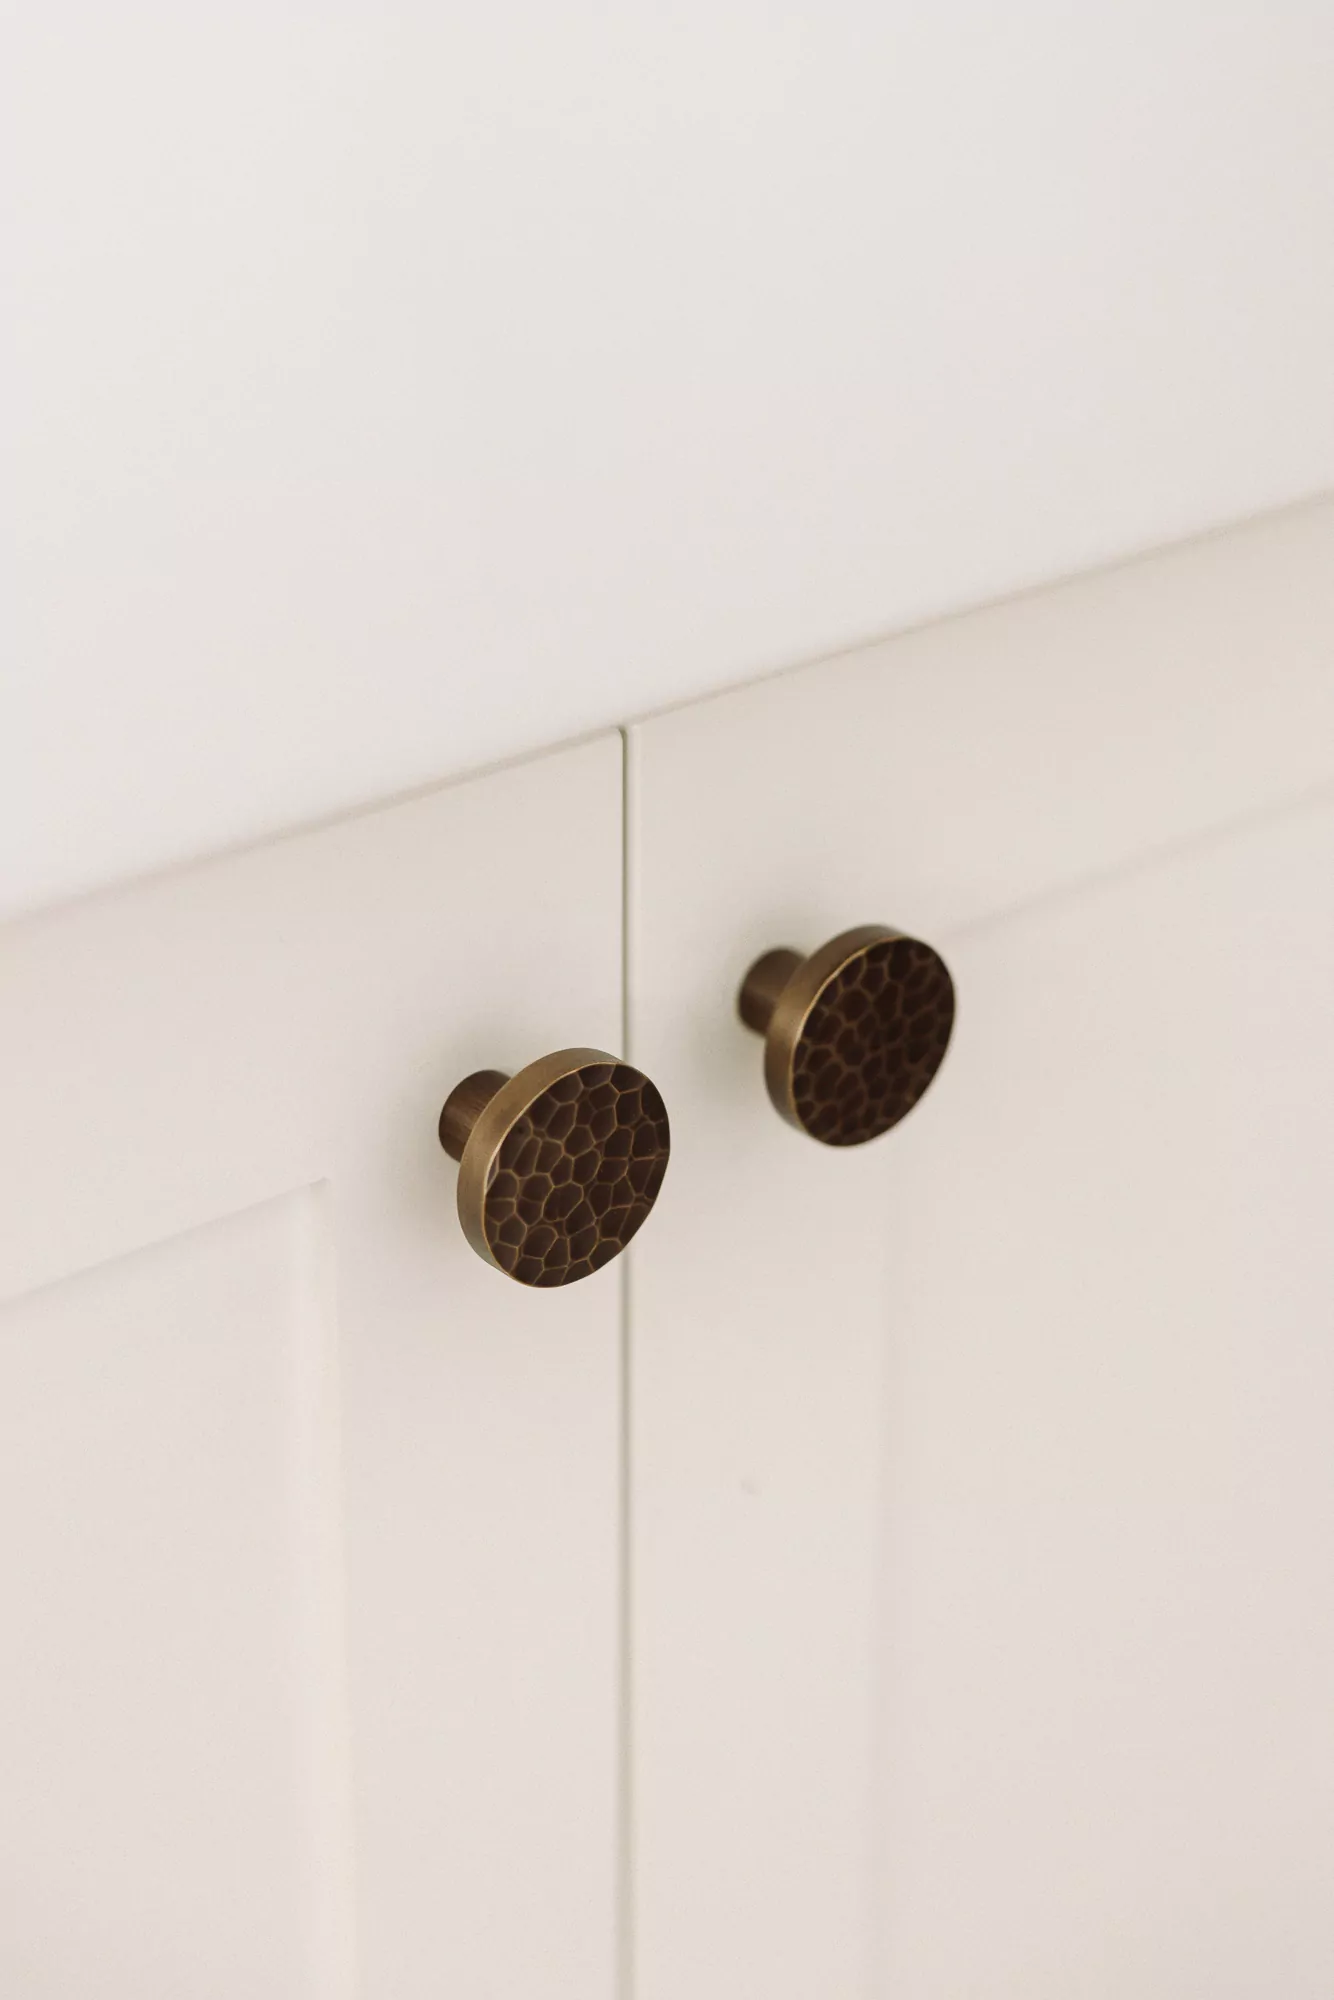 castella cabinet knobs